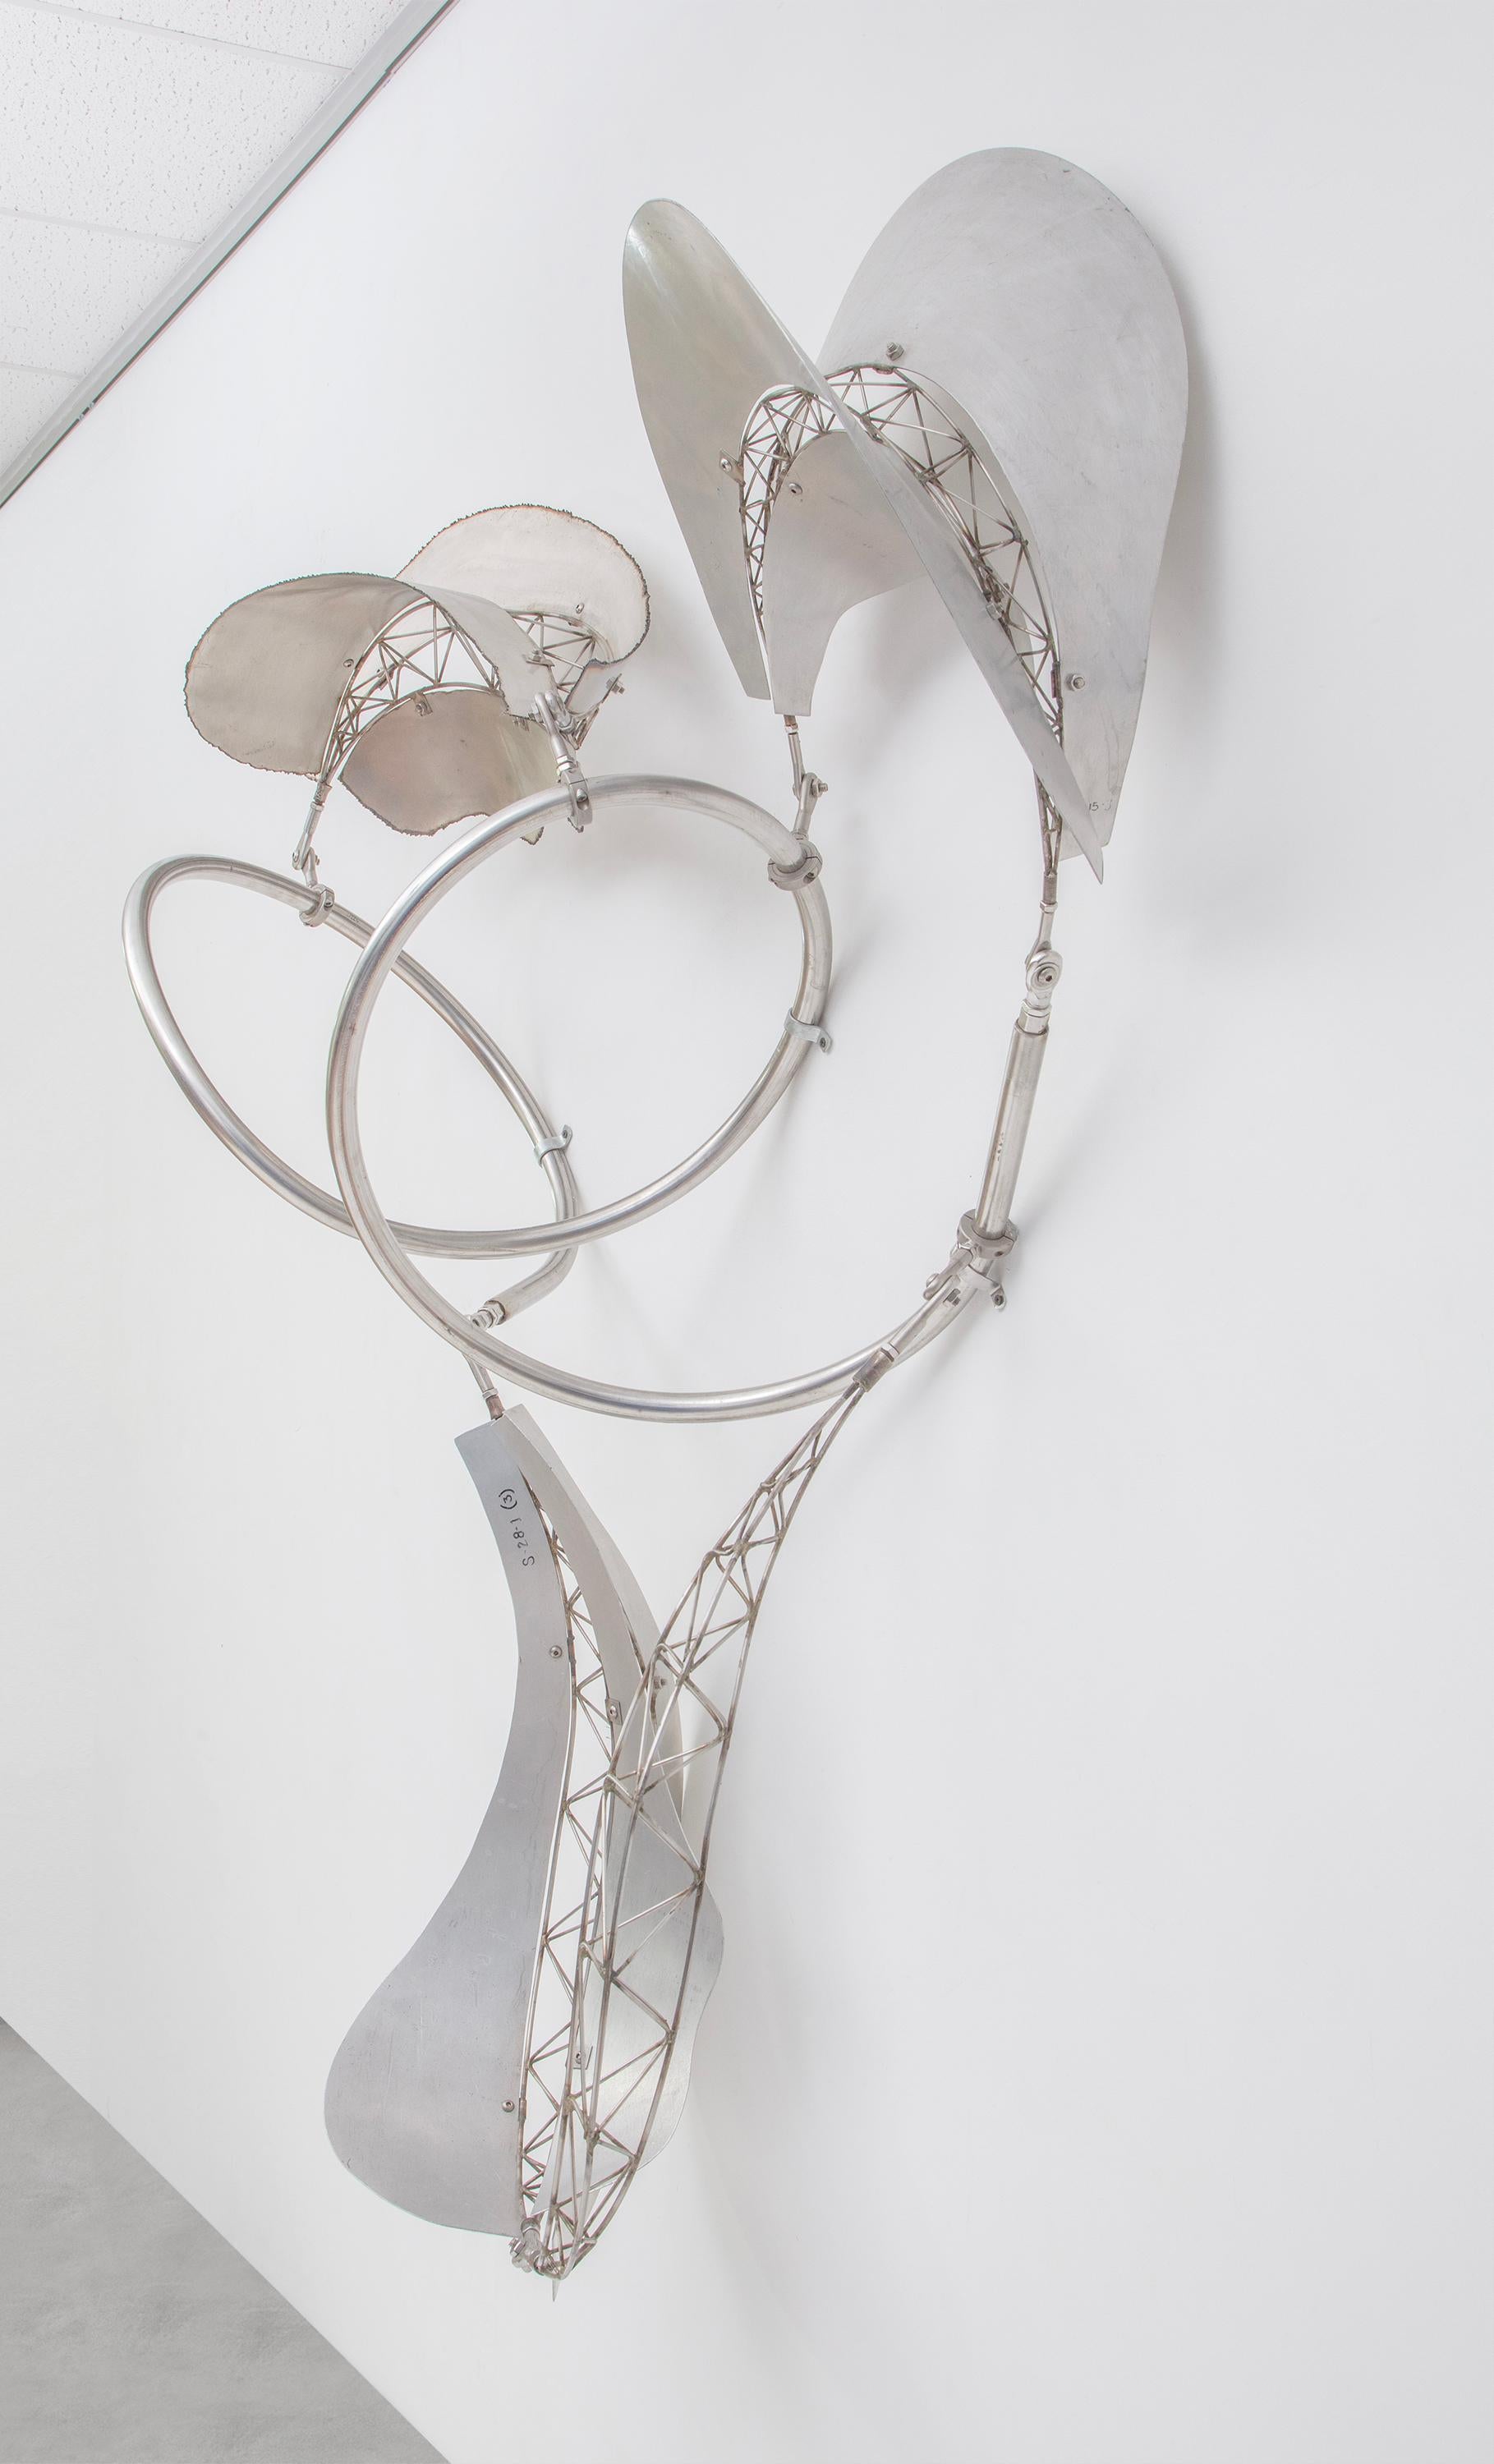 Dadap – Sculpture von Frank Stella